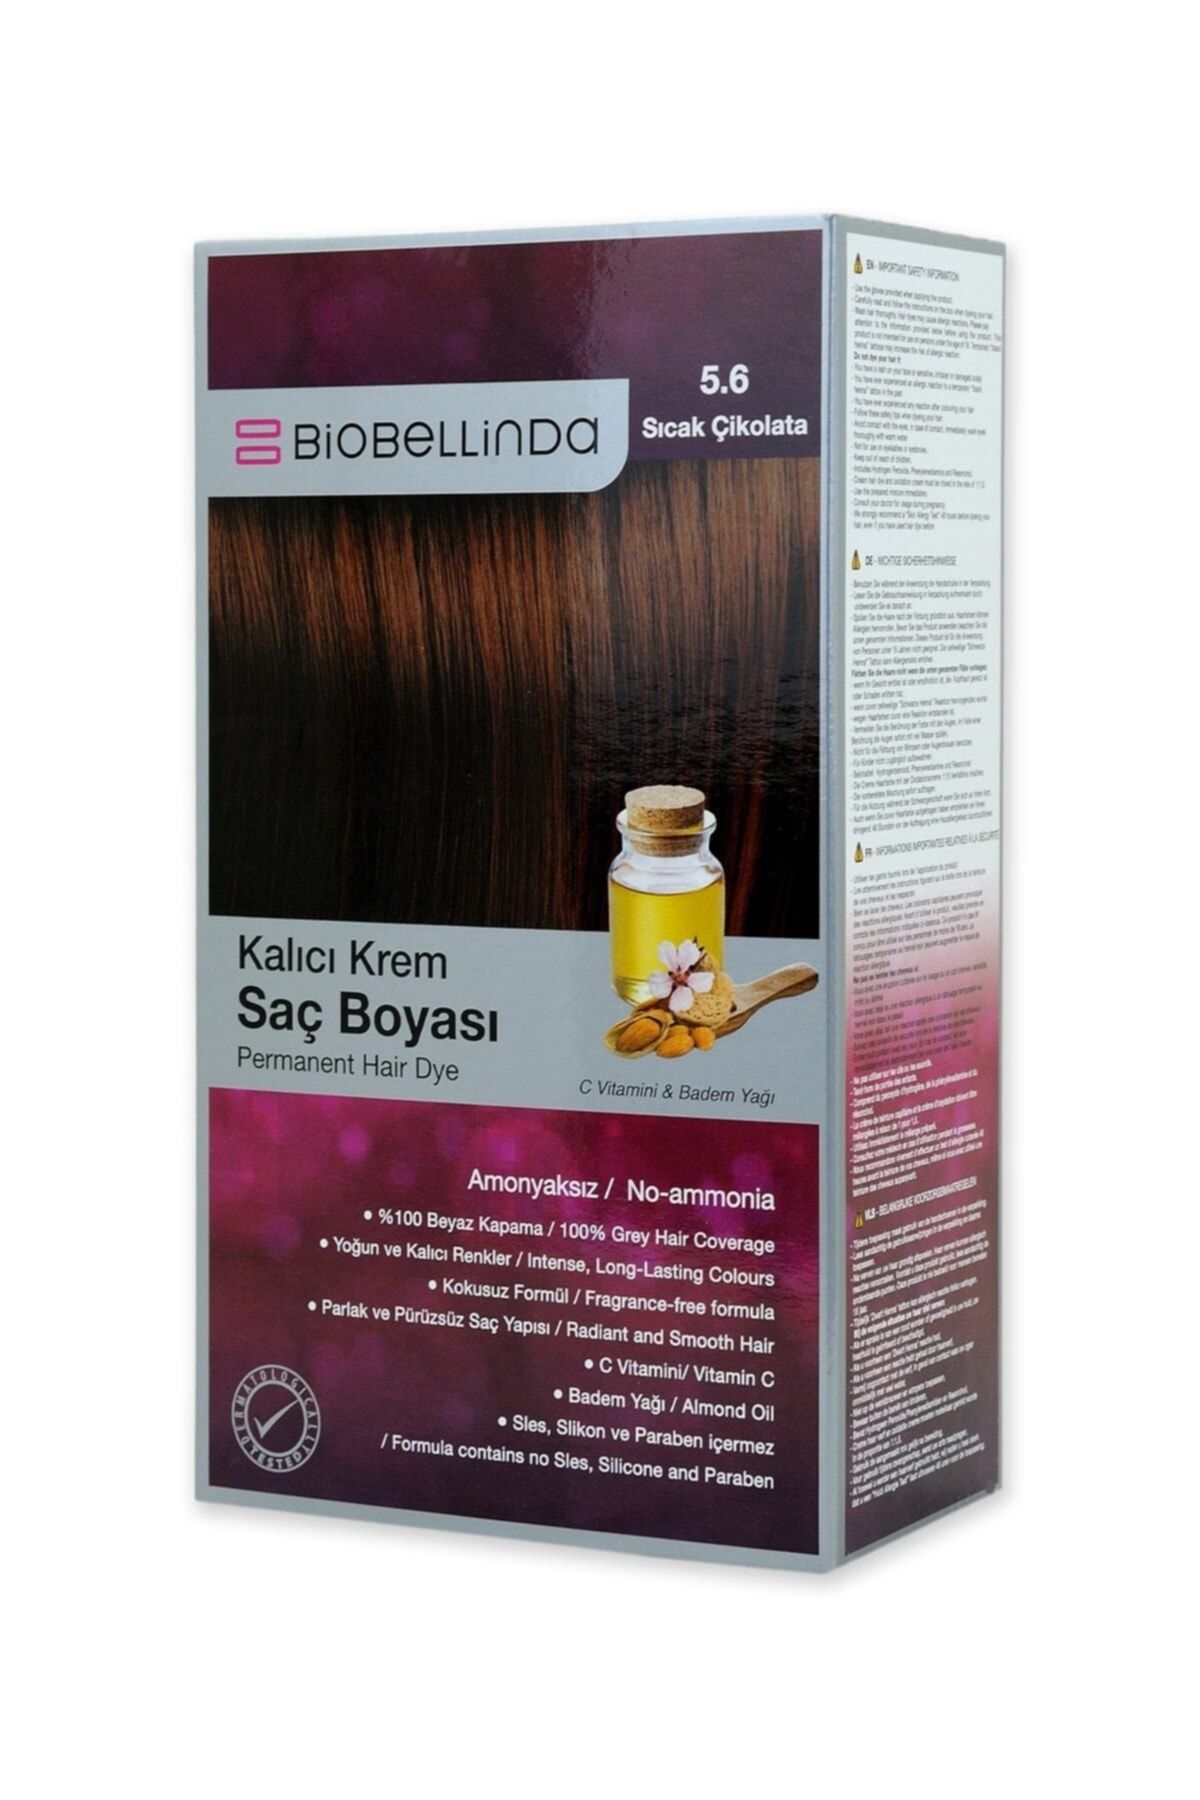 BioBellinda Amonyaksız Kalıcı Krem Saç Boyası - 5.6 Sıcak Çikolata